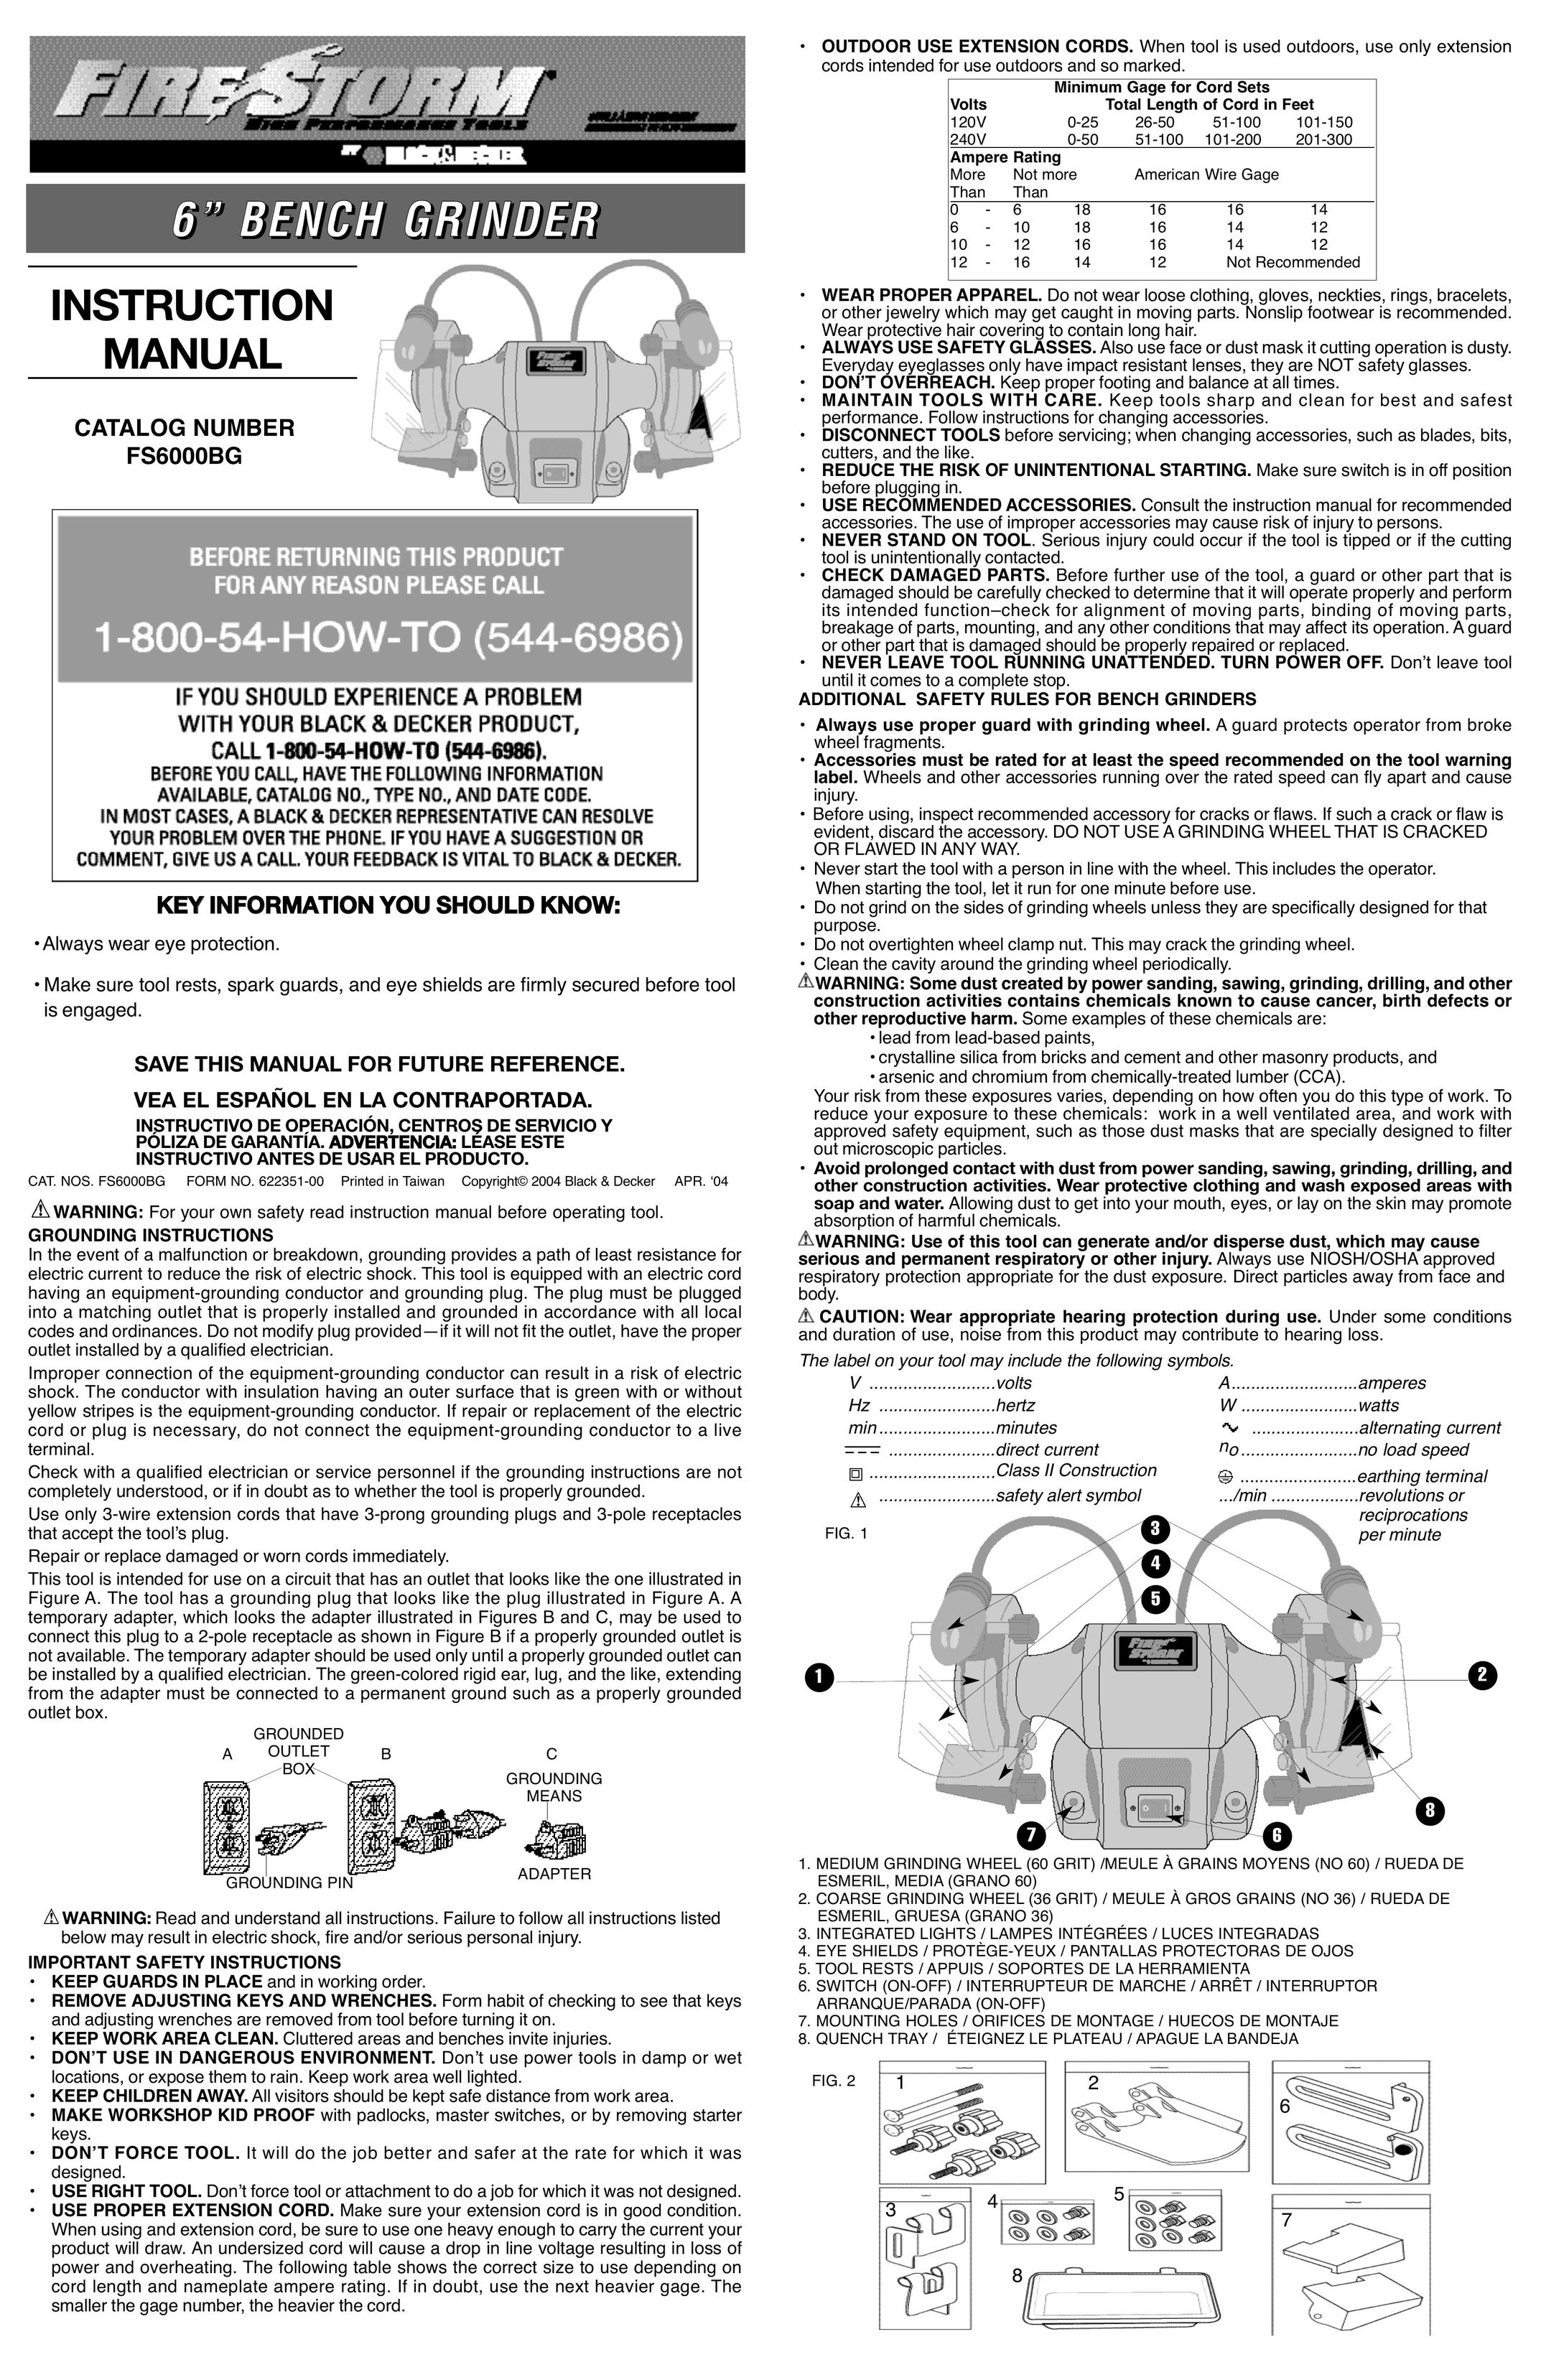 Black & Decker 622351-00 Grinder User Manual